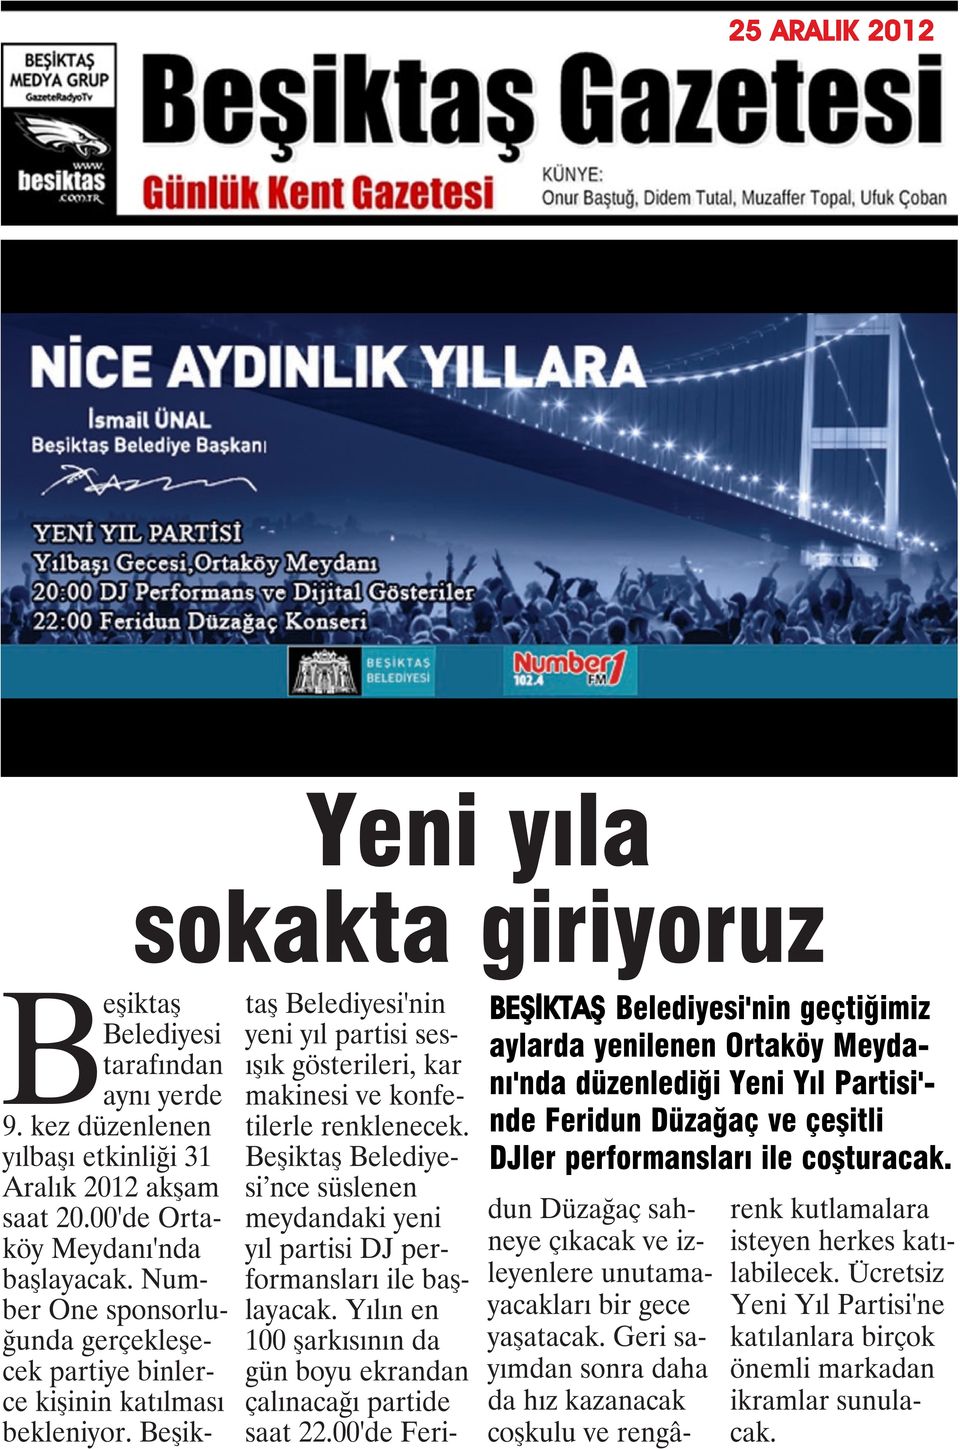 Number One sponsorluğunda gerçekleşecek partiye binlerce kişinin katılması bekleniyor. Beşiktaş Belediyesi'nin yeni yıl partisi sesışık gösterileri, kar makinesi ve konfetilerle renklenecek.